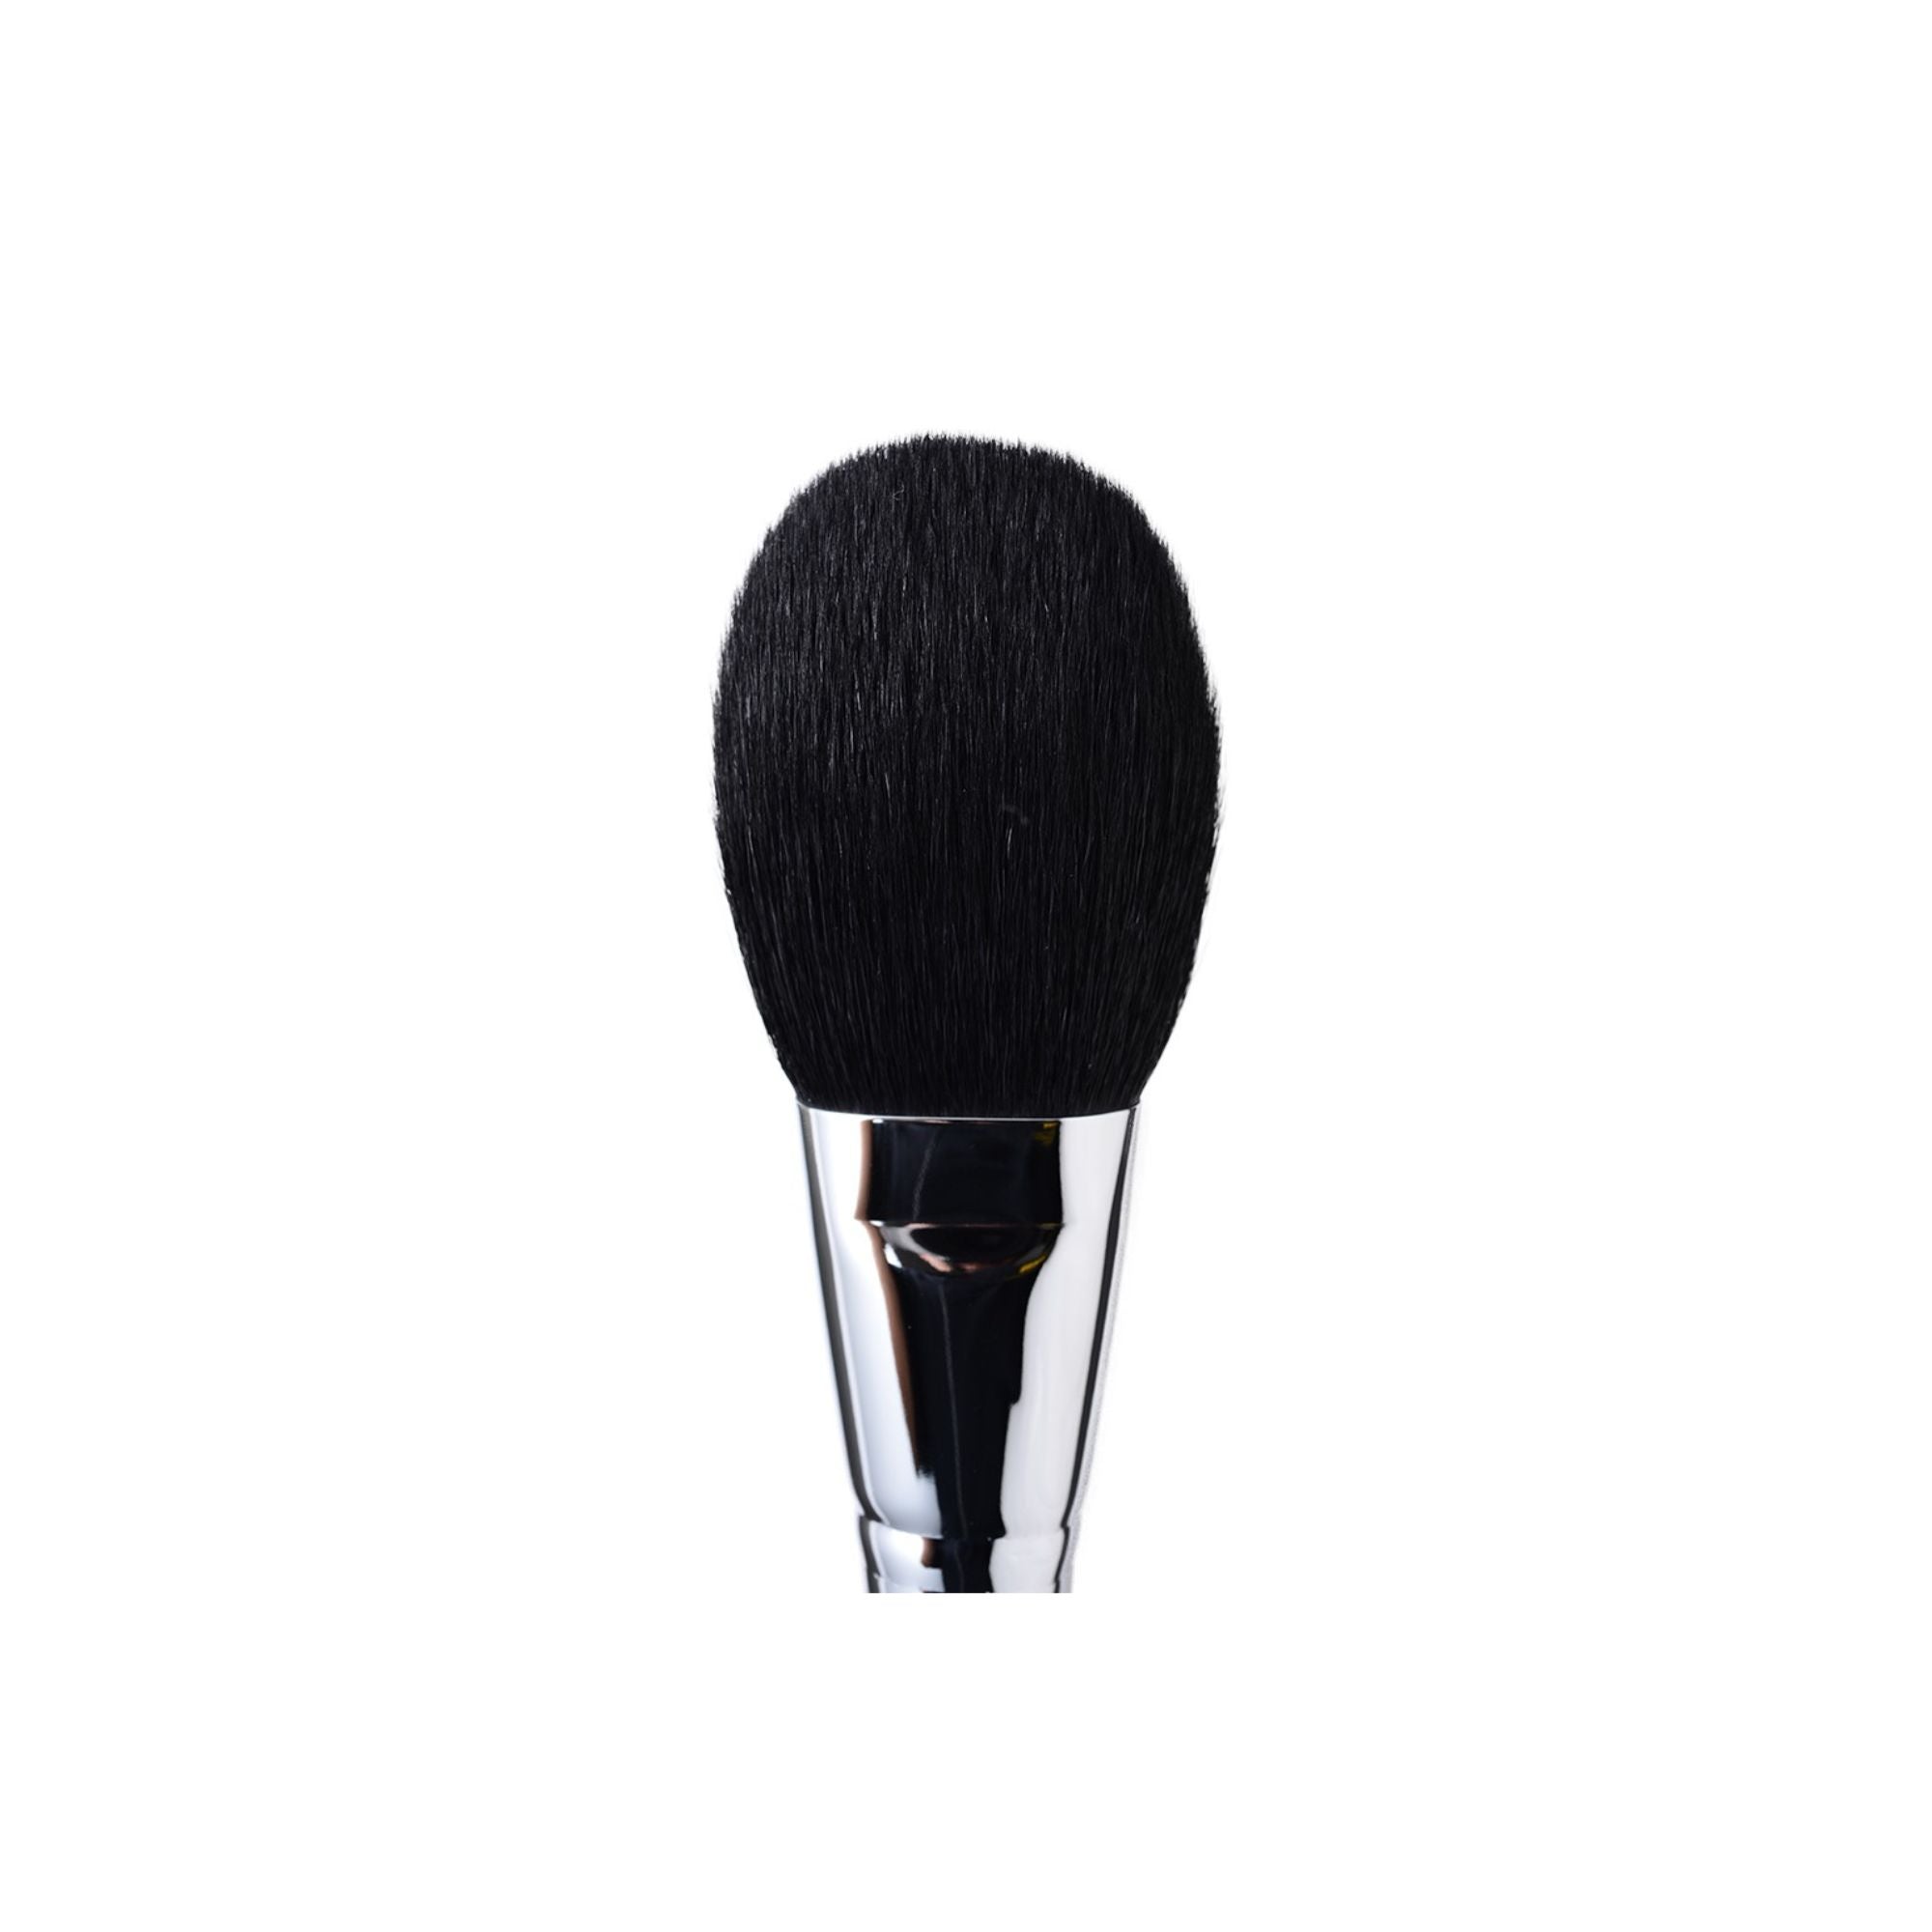 Koyudo C001P Large Powder Brush - Fude Beauty, Japanese Makeup Brushes